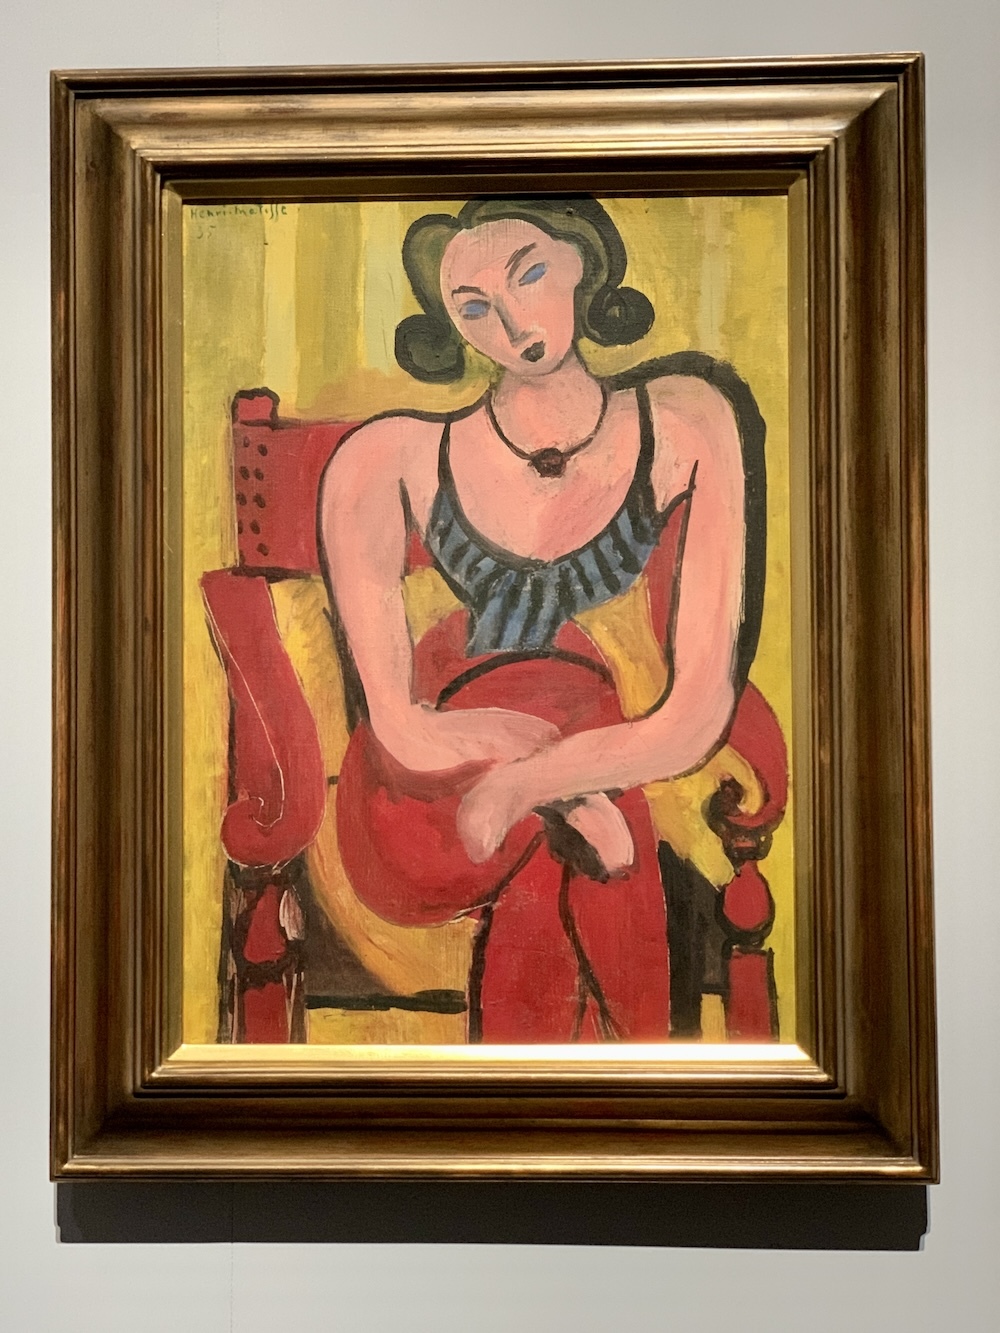  アンリ・マティス《青い胴着の女》1935年 石橋財団アーティゾン美術館蔵 (C) Succession H.Matisse